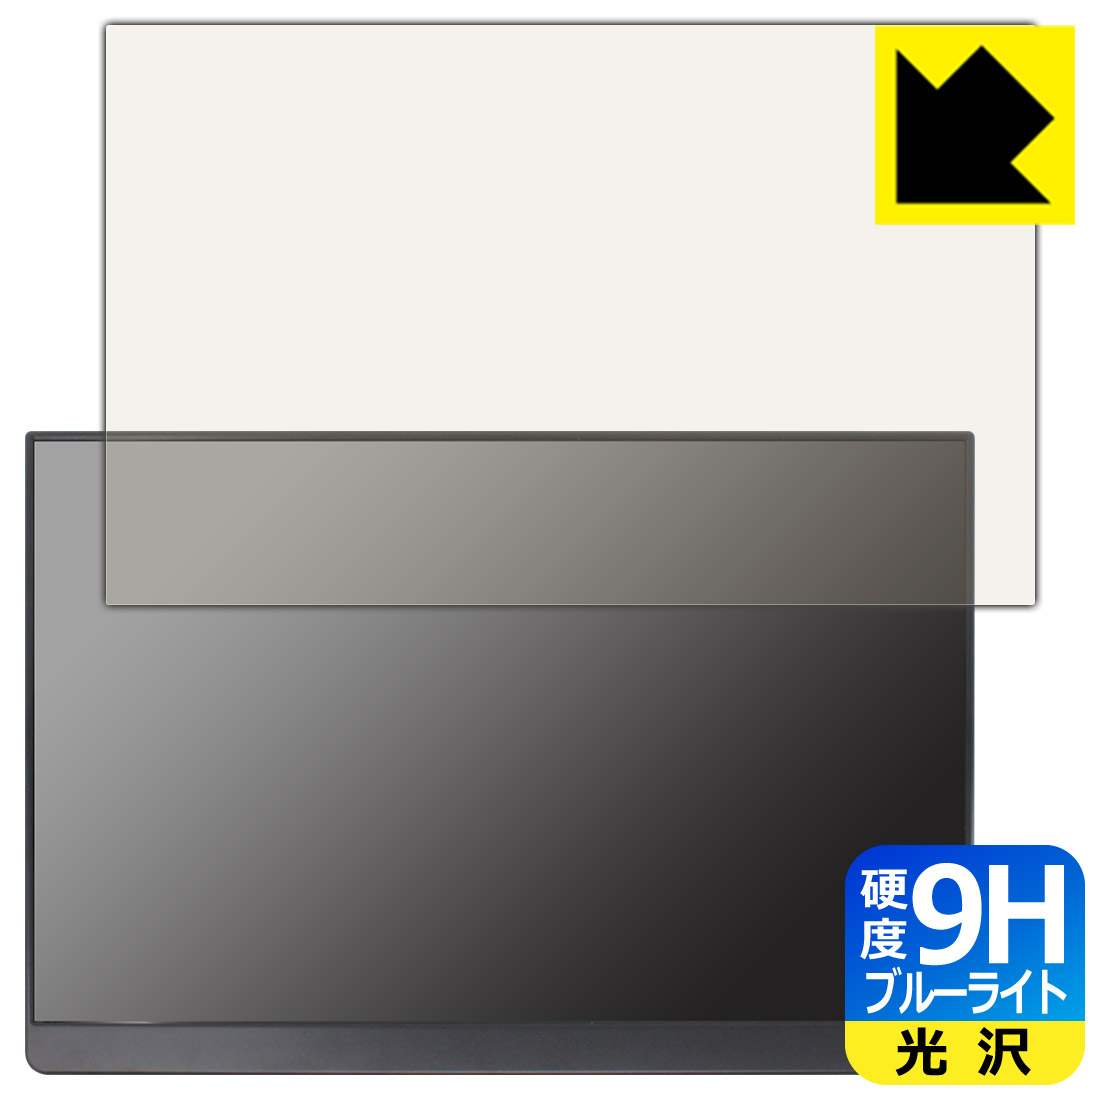 ●対応機種 : EHOMEWEI 16インチ モバイルモニター E160NSL専用の商品です。●製品内容 : 画面用フィルム1枚・クリーニングワイプ1個●表面硬度9HのPETフィルムでブルーライトも大幅にカットする『9H高硬度ブルーライトカット(光沢)の保護フィルム』●安心の国産素材を使用。日本国内の自社工場で製造し出荷しています。 ★貼り付け失敗交換サービス対象商品★今なら送料無料！この商品は【宅配便　送料無料】商品です。 　 表面硬度はガラスフィルムと同等の9Hですが、しなやかな柔軟性がある「超ハードコートPETフィルム」なので衝撃を受けても割れません。厚みも一般的なガラスフィルムより薄い約0.2mmでタッチ操作の感度も良好です。(※1) 液晶画面のLEDバックライトから発せられる「ブルーライト」は可視光線の中で最も刺激が強く、目や身体に悪影響があるのではないかといわれています。 このフィルムは、画面に貼りつけるだけで380～495nmの「ブルーライト」を大幅にカットしますので、仕事や遊びで、長時間液晶画面を使用する方や、目の疲れが気になる方にオススメです。 「ブルーライトカット機能付きPCメガネ」などをかけることなく、「ブルーライト」をカットすることができますので、メガネを持ち歩く必要もなく便利です。 ※全光線透過率：92% ※この製品は、ほぼ透明(非常に僅かな色)です。 従来のブルーライトカットフィルムは、映像の色調などが変わる場合もありましたが、このフィルムはほぼ透明(非常に僅かな色)となっており、色調もほとんど変わりません。全光線透過率も92%と、非常に高い光沢タイプです。 表面はフッ素コーティングがされており、皮脂や汚れがつきにくく、また、落ちやすくなっています。指滑りもなめらかで、快適な使用感です。 油性マジックのインクもはじきますので簡単に拭き取れます。 接着面は気泡の入りにくい特殊な自己吸着タイプです。素材に柔軟性があり、貼り付け作業も簡単にできます。また、はがすときにガラス製フィルムのように割れてしまうことはありません。 貼り直しが何度でもできるので、正しい位置へ貼り付けられるまでやり直すことができます。 高級グレードの国産素材を日本国内の弊社工場で加工している完全な Made in Japan です。安心の品質をお届けします。 ※1「表面硬度 9H」の表示は素材として使用しているフィルムの性能です。機器に貼り付けた状態の測定結果ではありません。 使用上の注意 ●本製品は機器の画面をキズなどから保護するフィルムです。他の目的にはご使用にならないでください。 ●本製品は液晶保護および機器本体を完全に保護することを保証するものではありません。機器の破損、損傷、故障、その他損害につきましては一切の責任を負いかねます。 ●製品の性質上、画面操作の反応が変化したり、表示等が変化して見える場合がございます。 ●貼り付け作業時の失敗(位置ズレ、汚れ、ゆがみ、折れ、気泡など)および取り外し作業時の破損、損傷などについては、一切の責任を負いかねます。 ●水に濡れた状態でのご使用は吸着力の低下などにより、保護フィルムがはがれてしまう場合がございます。防水対応の機器でご使用の場合はご注意ください。 ●アルコール類やその他薬剤を本製品に付着させないでください。表面のコーティングや吸着面が変質するおそれがあります。 ●品質向上のため、仕様などを予告なく変更する場合がございますので、予めご了承ください。 ・注意事項：モニターの発色具合により色合いが異なる場合がございます。